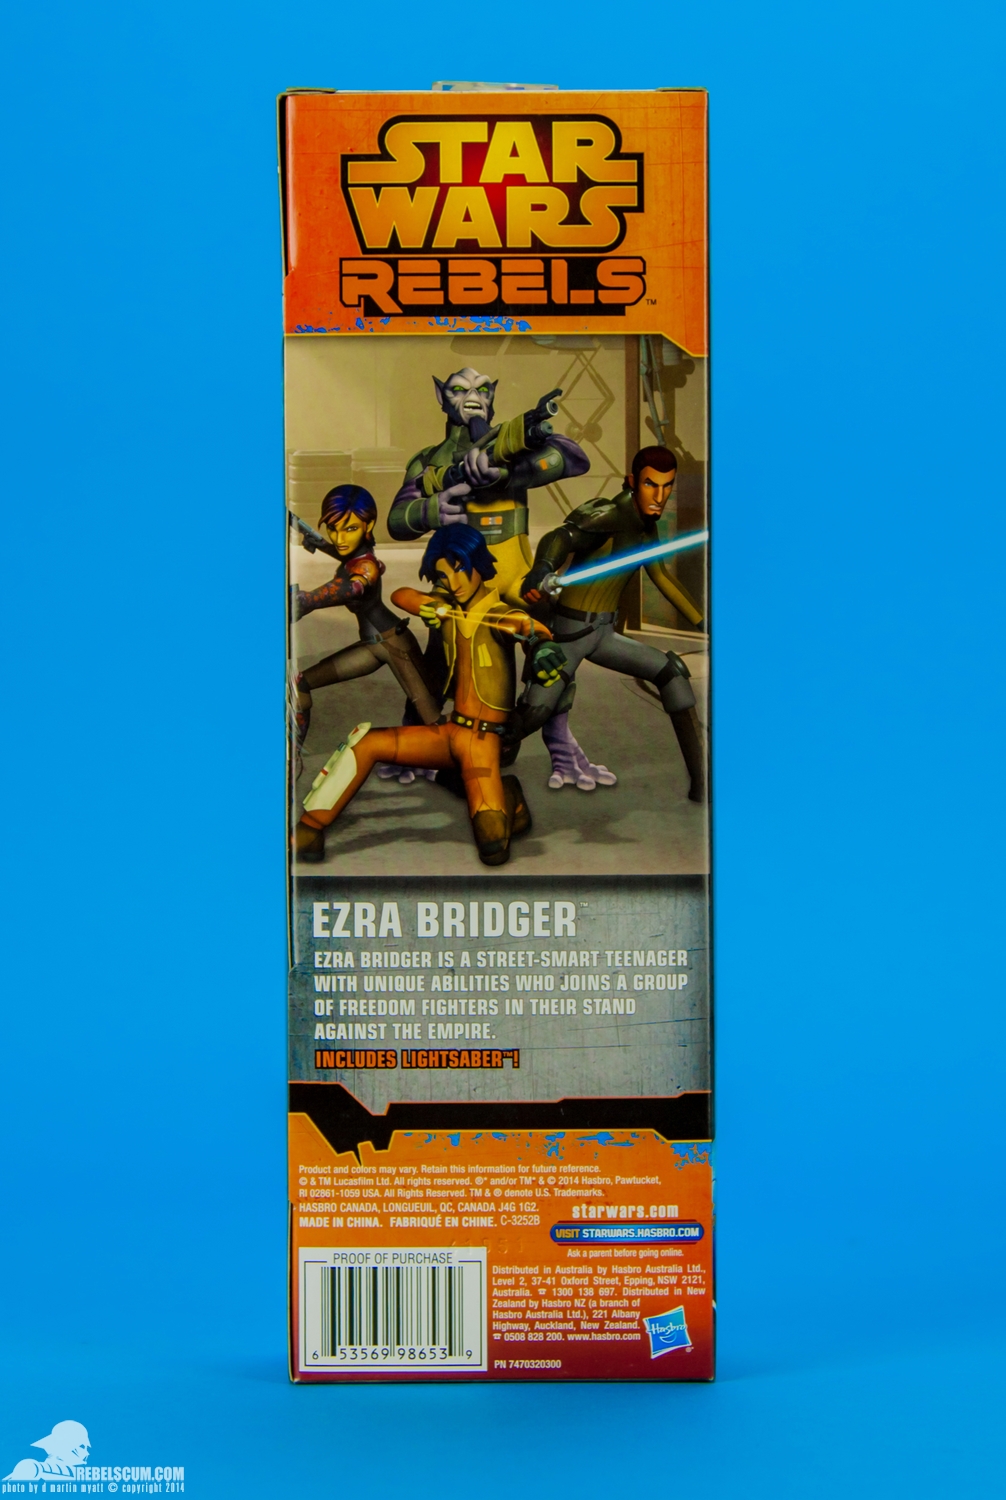 Ezra-Bridger-Star-Wars-Rebels-Hero-Series-Figure-011.jpg